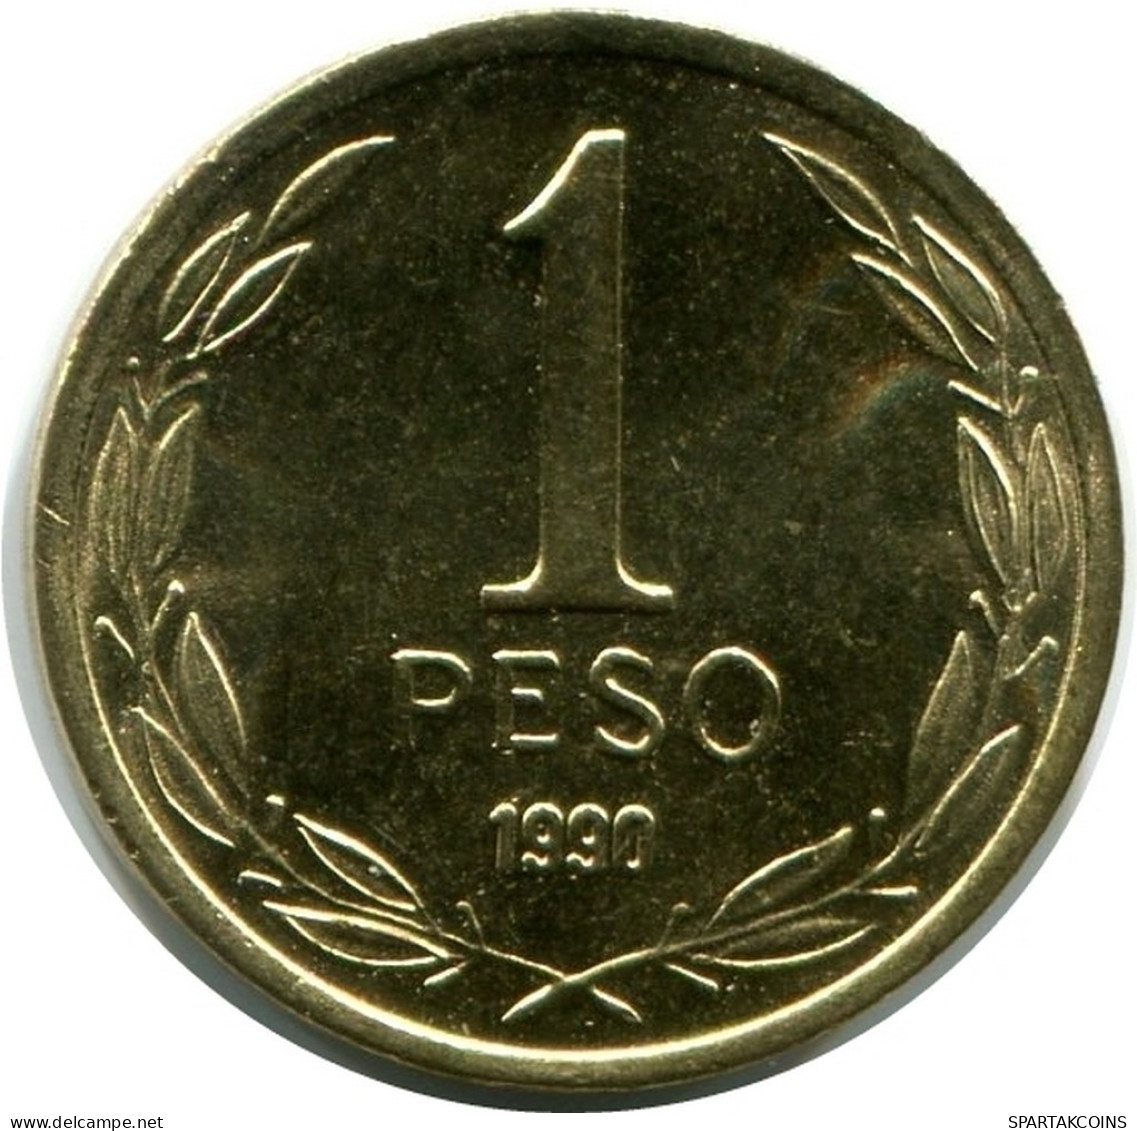 1 PESO 1990 CHILE UNC Coin #M10058.U.A - Cile